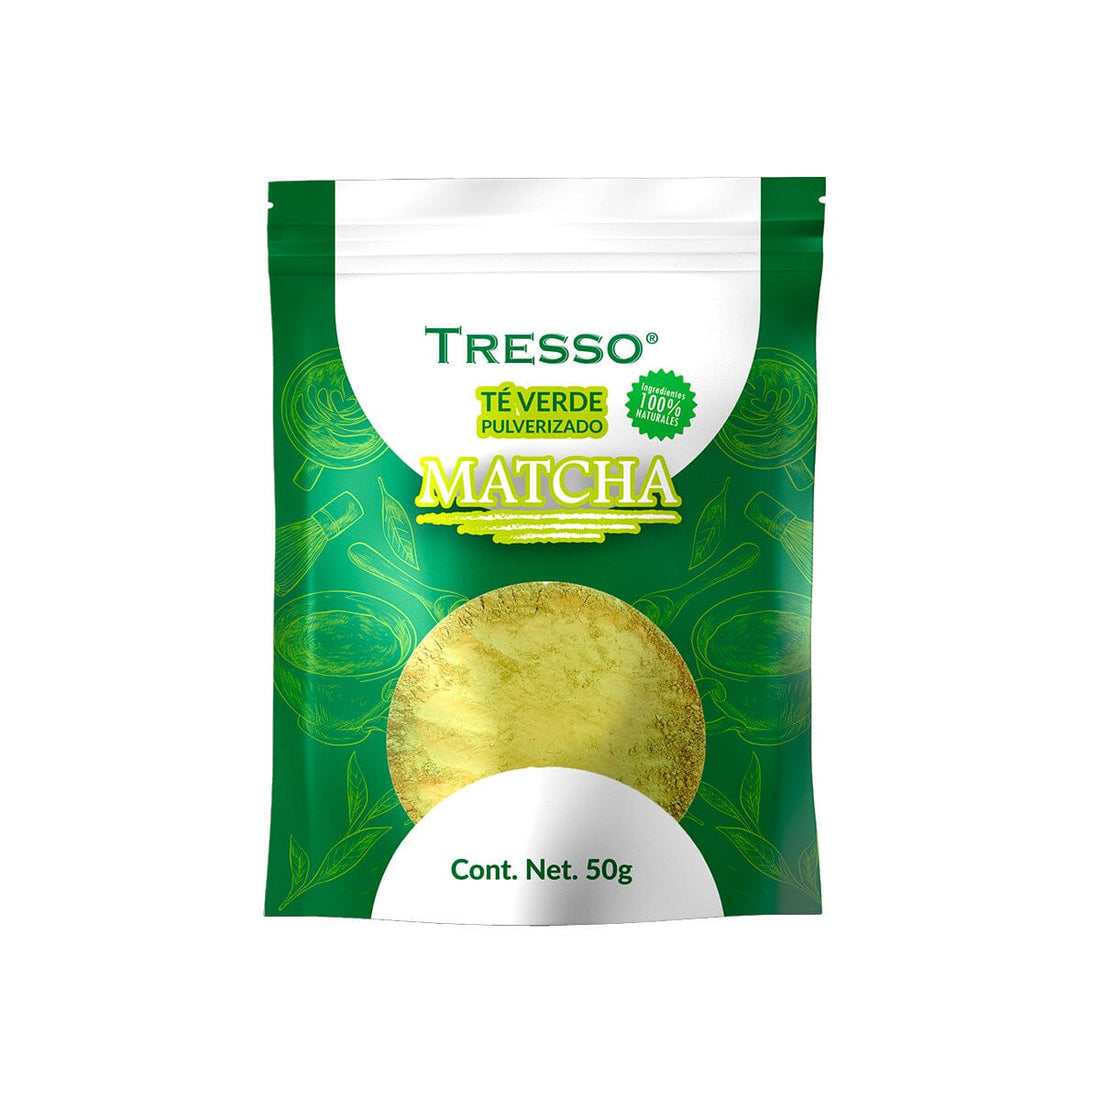 Té Verde (Pulverizado): “Matcha” 50 G Té TRESSO® 50g 